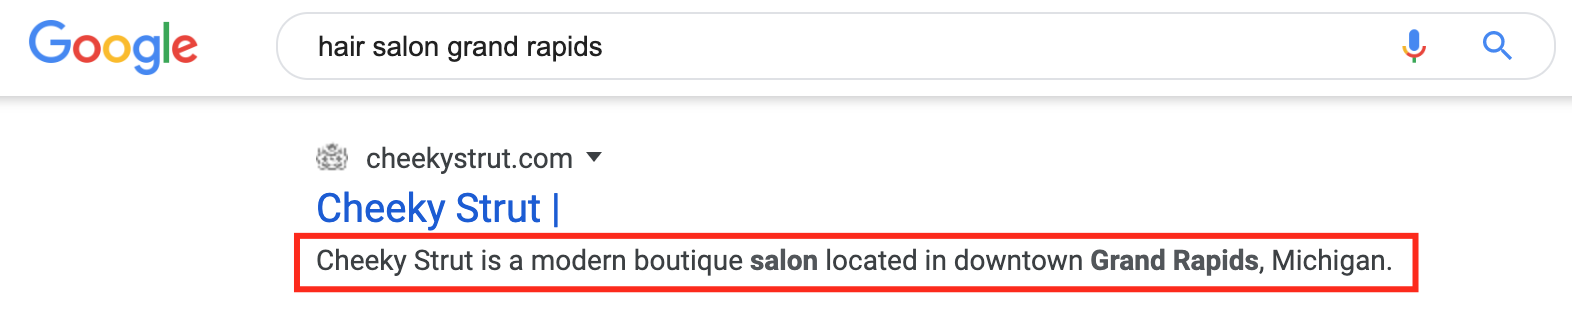 page description for hair salon